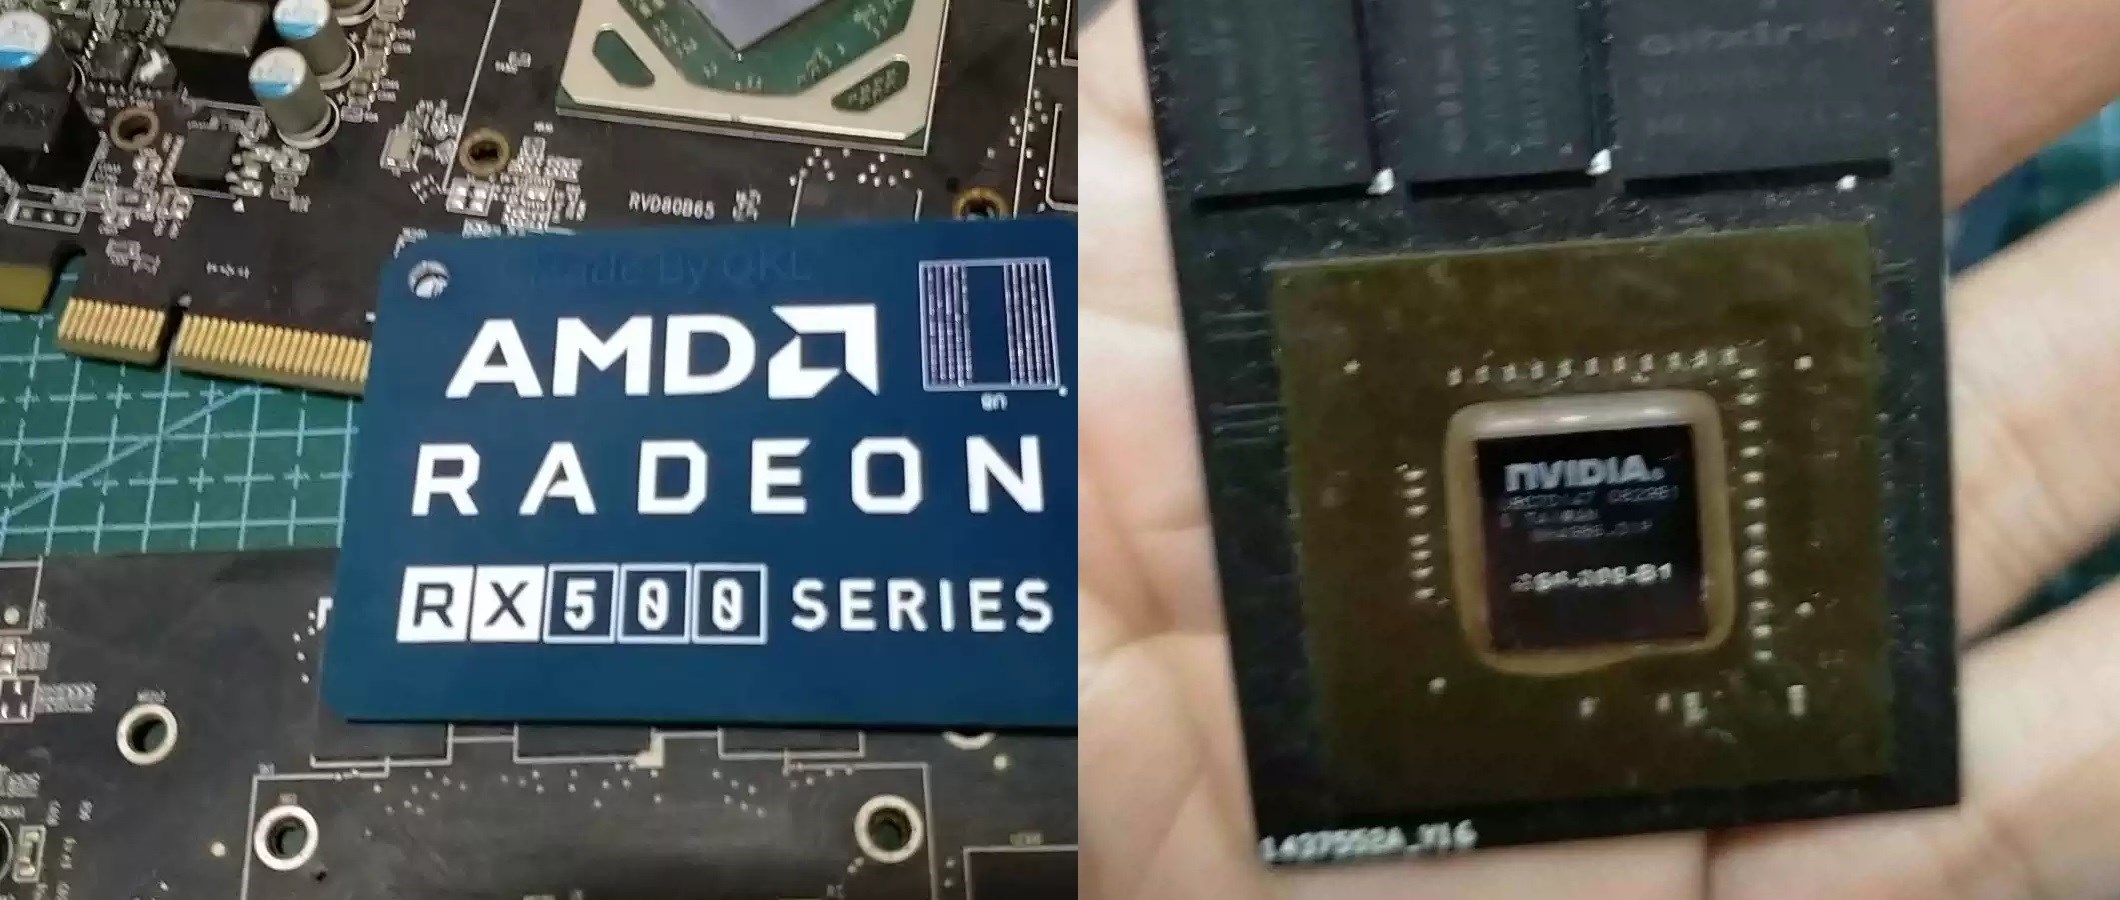 AMD RX580 anahtarlığa dönüştürüldü: 5 dolara satılıyor